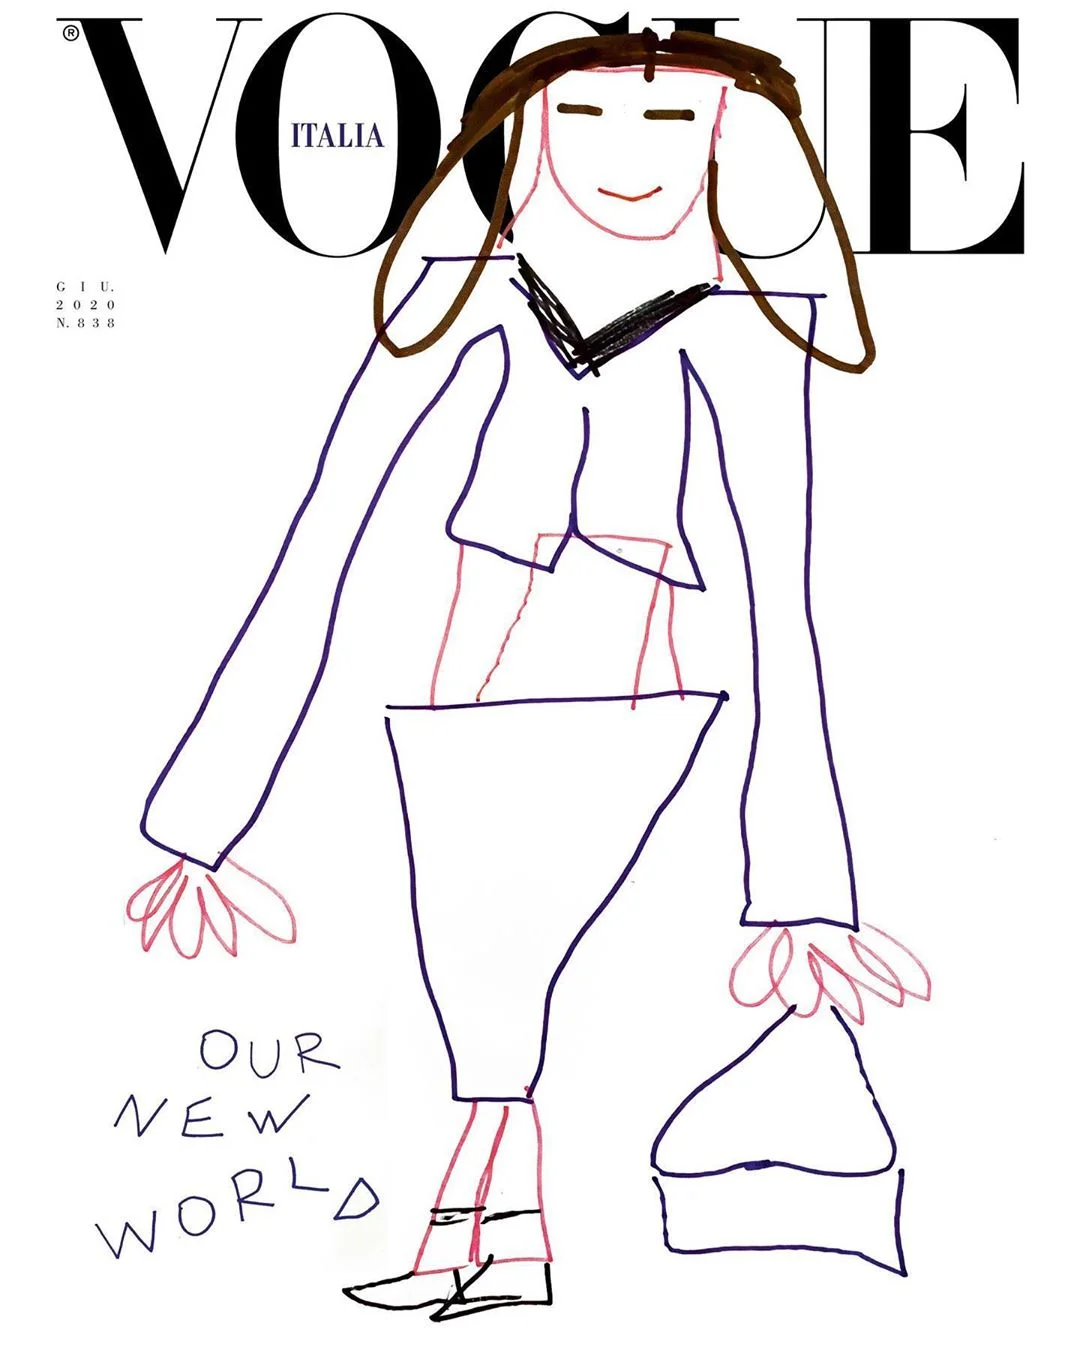 Уперше в історії обкладинку Vogue прикрасили дитячі малюнки - фото 480758